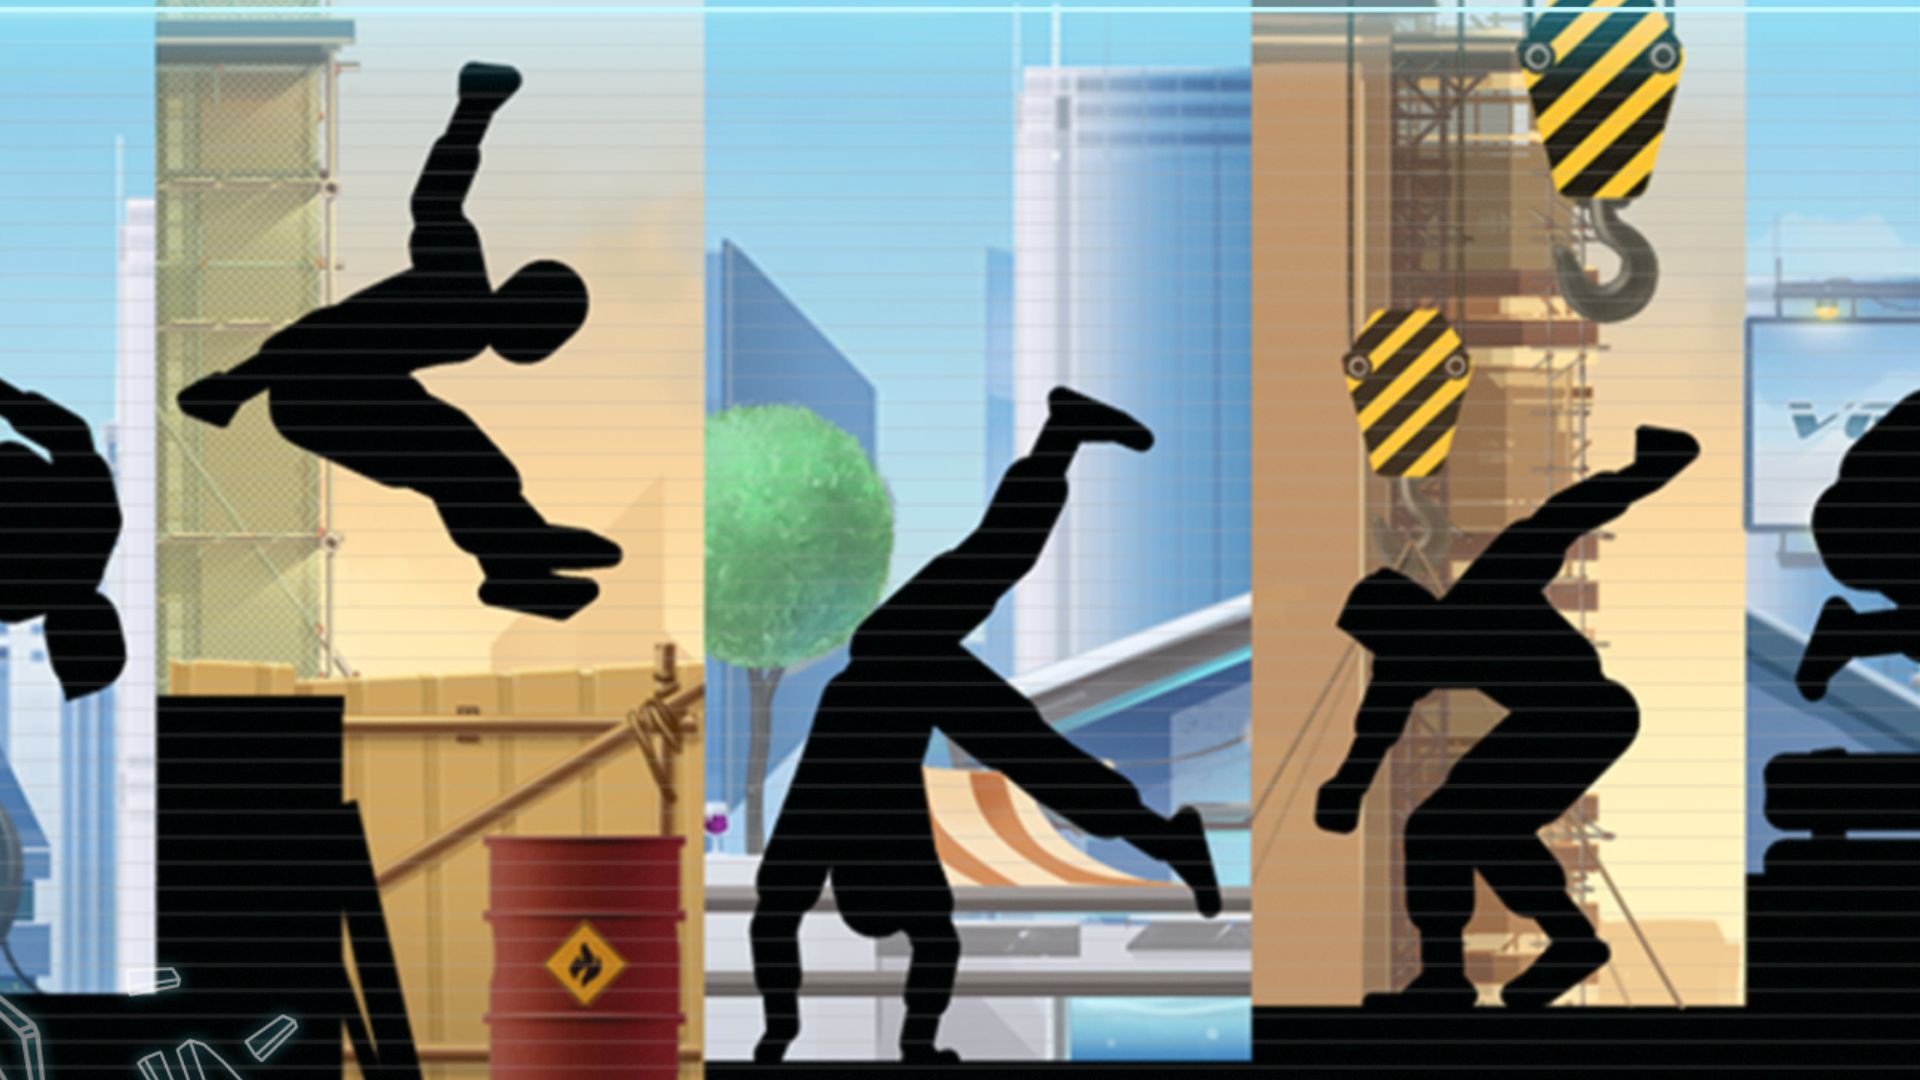 パルクール ゲーム -- さまざまなシーンで 3 つのシルエットがアクロバティックなパルクールの動きをします。